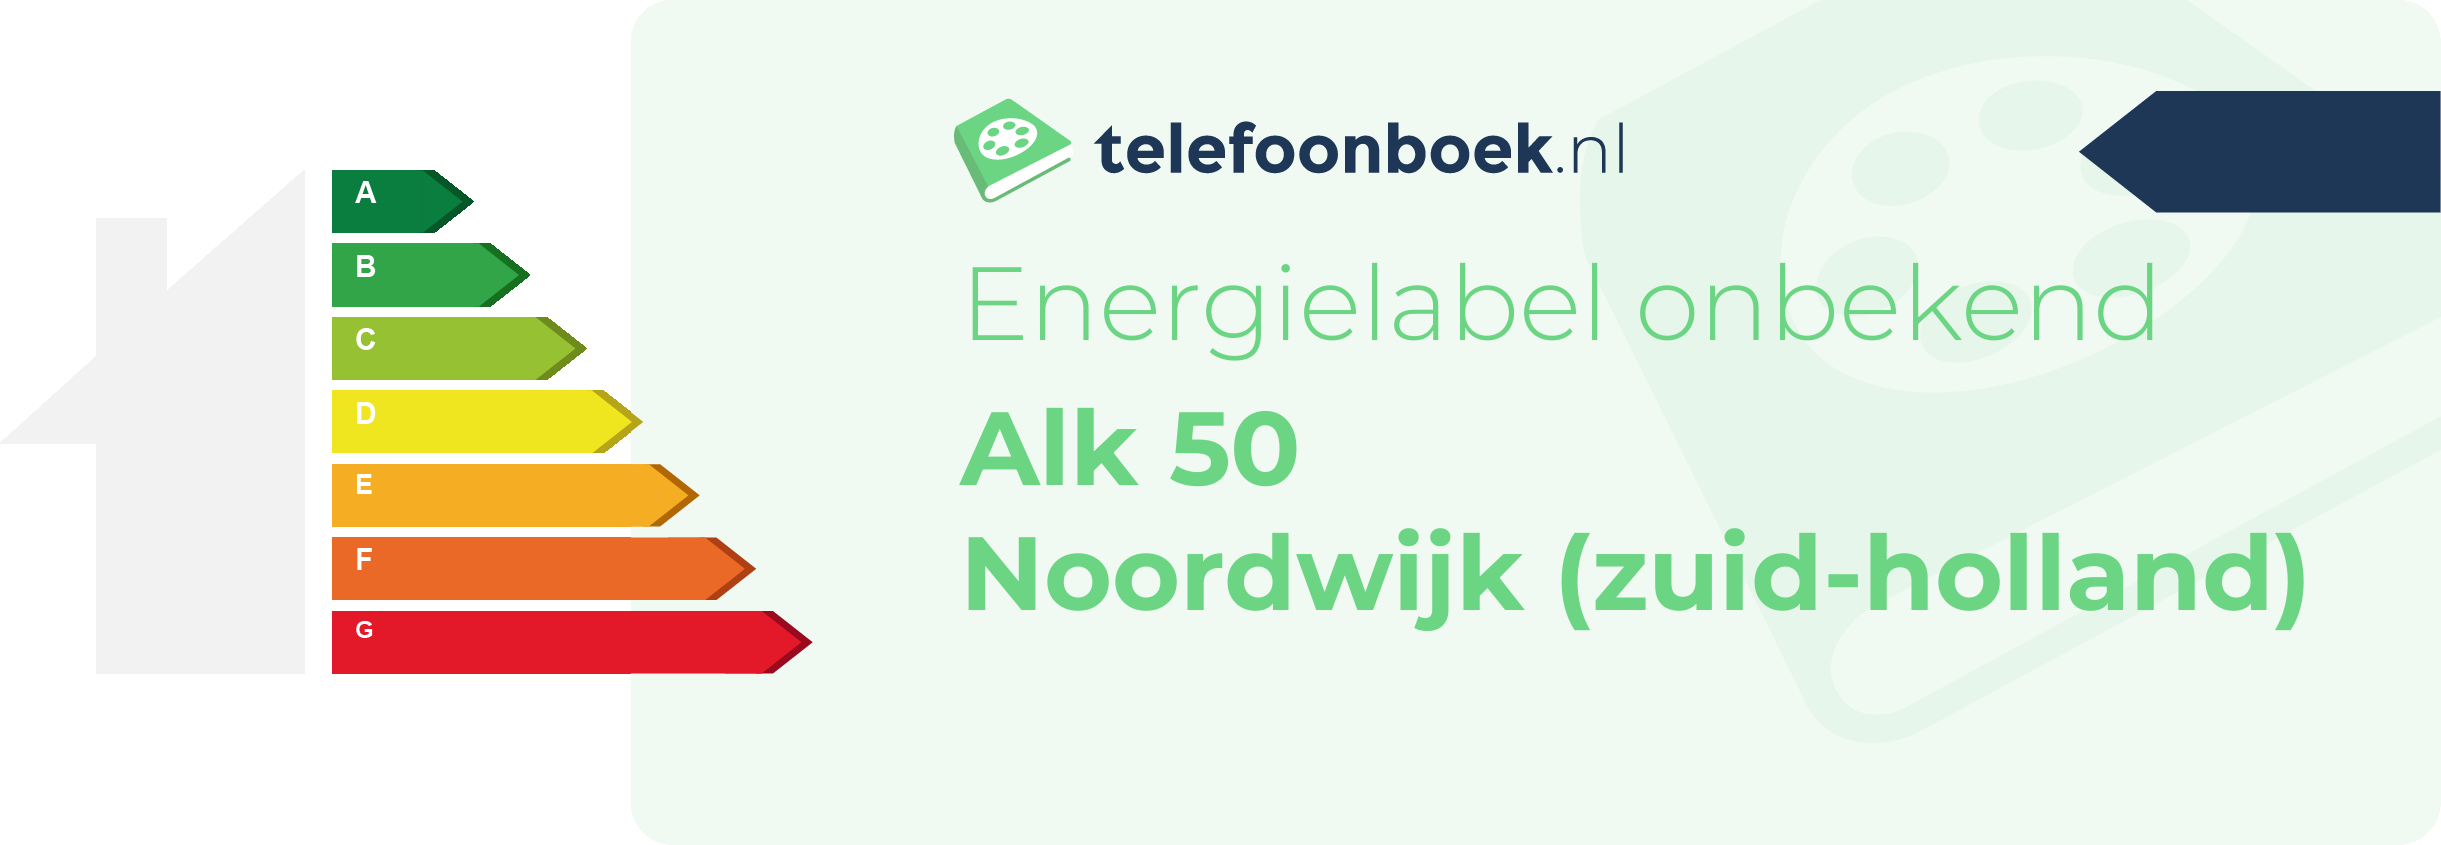 Energielabel Alk 50 Noordwijk (Zuid-Holland)